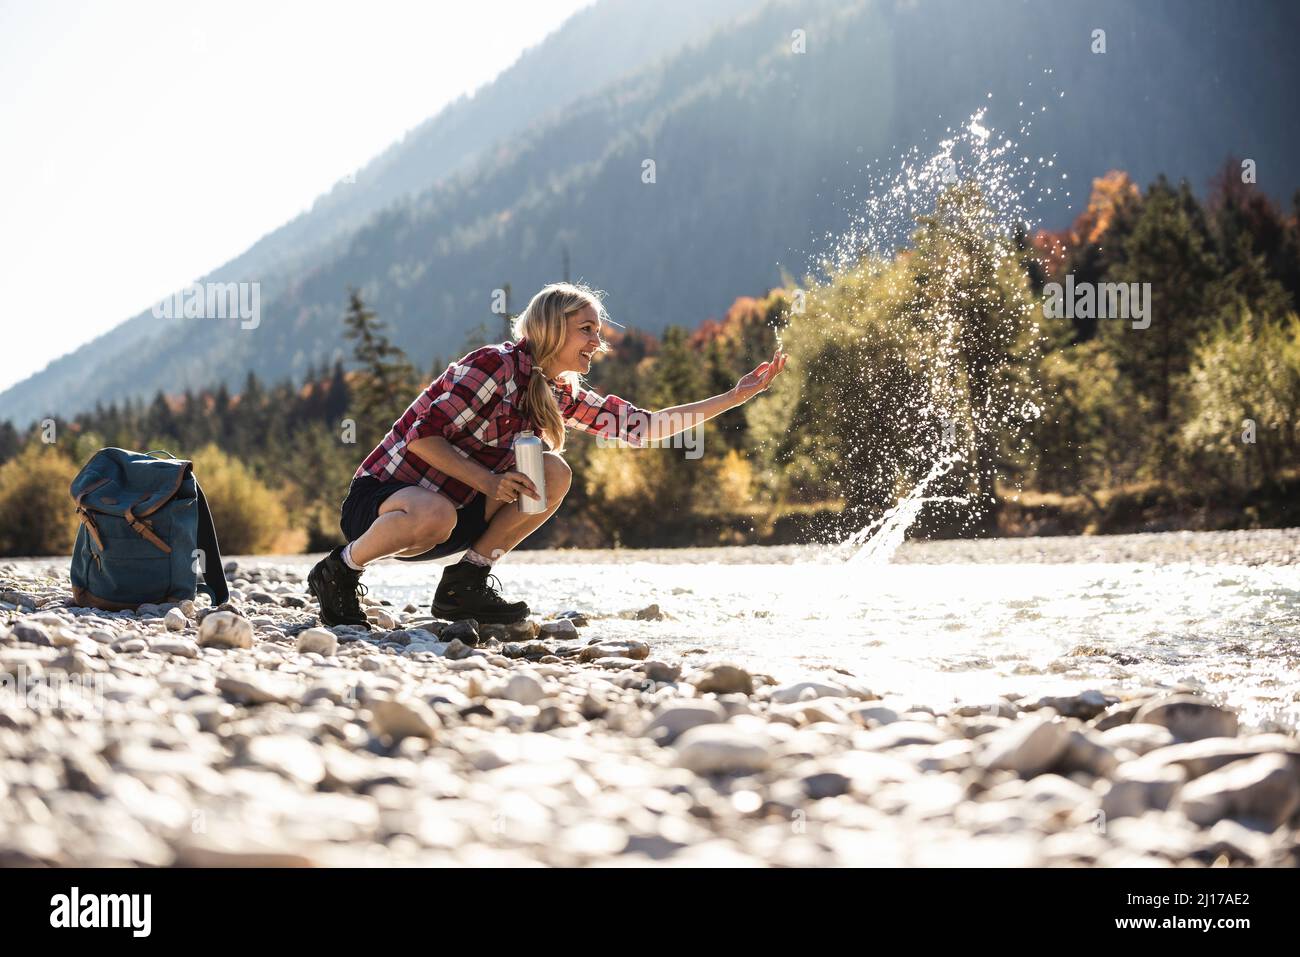 Austria, Alpi, donna su una escursione con spruzzi di acqua in un ruscello Foto Stock